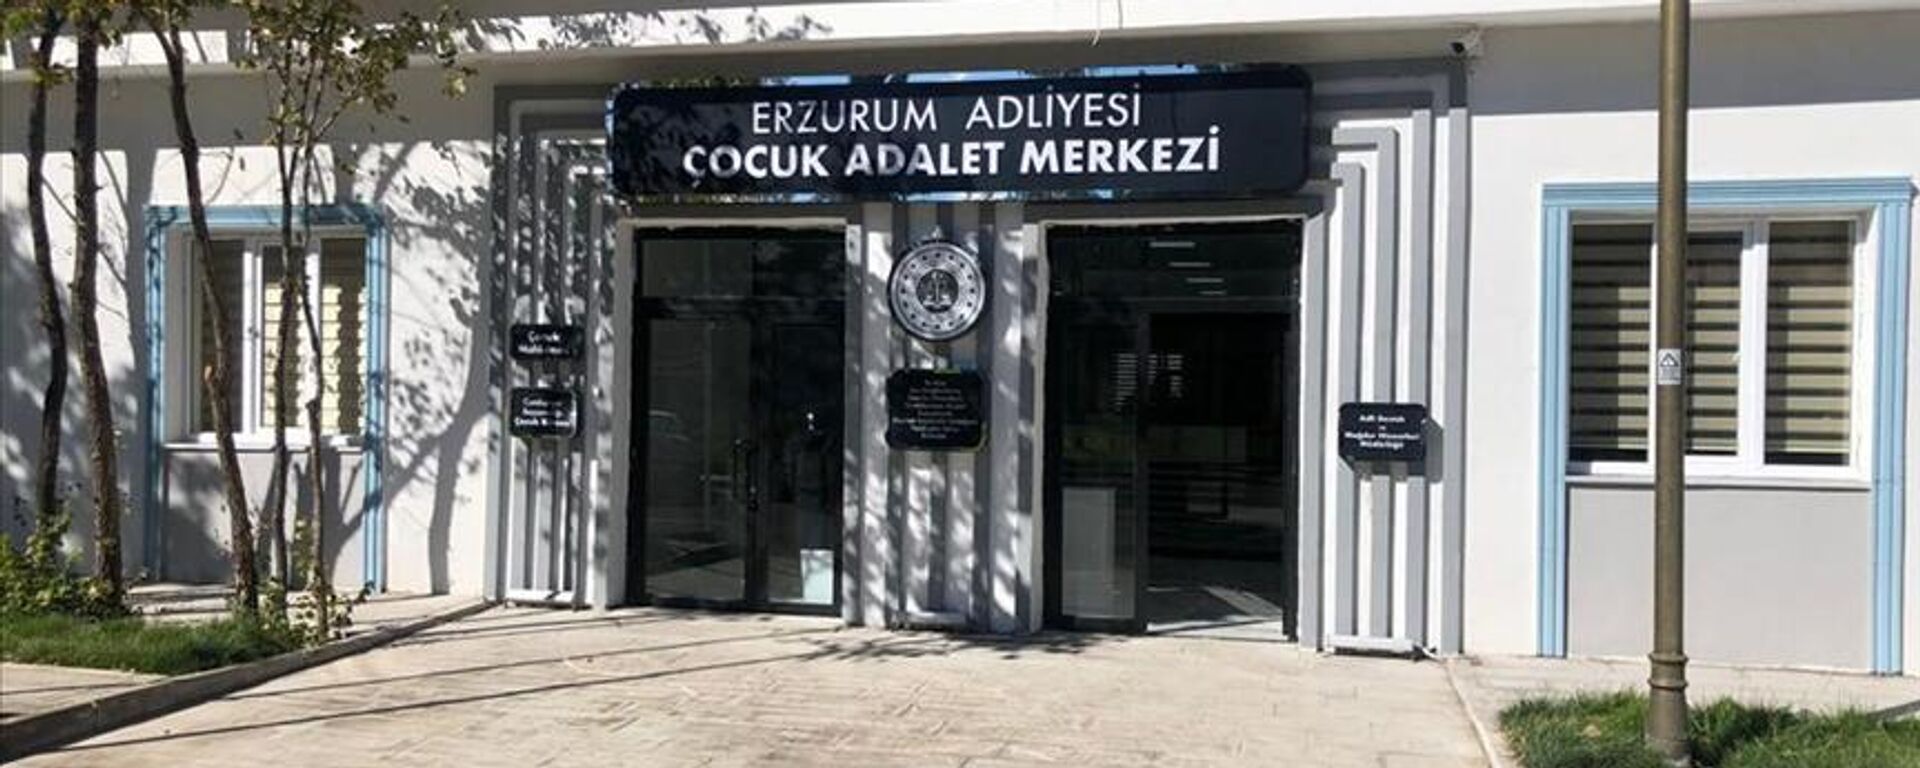 Türkiye'nin ilk Çocuk Adalet Merkezi Erzurum'da açılıyor - Sputnik Türkiye, 1920, 19.11.2021